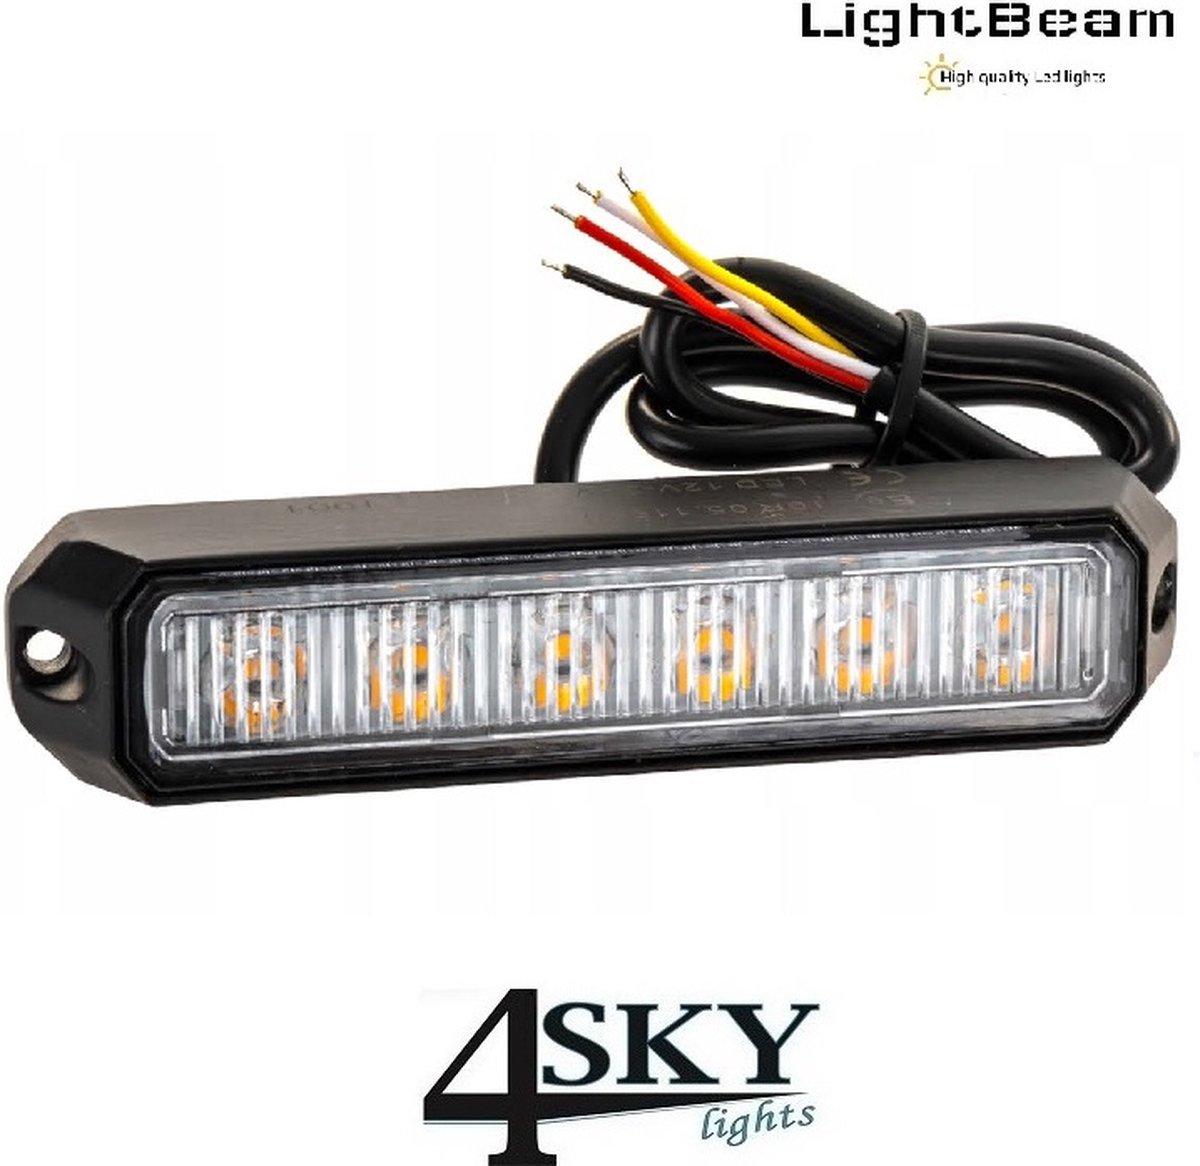 Lightbeam 18 watt LED flitser R65 R10 gekeurd 12V-24V